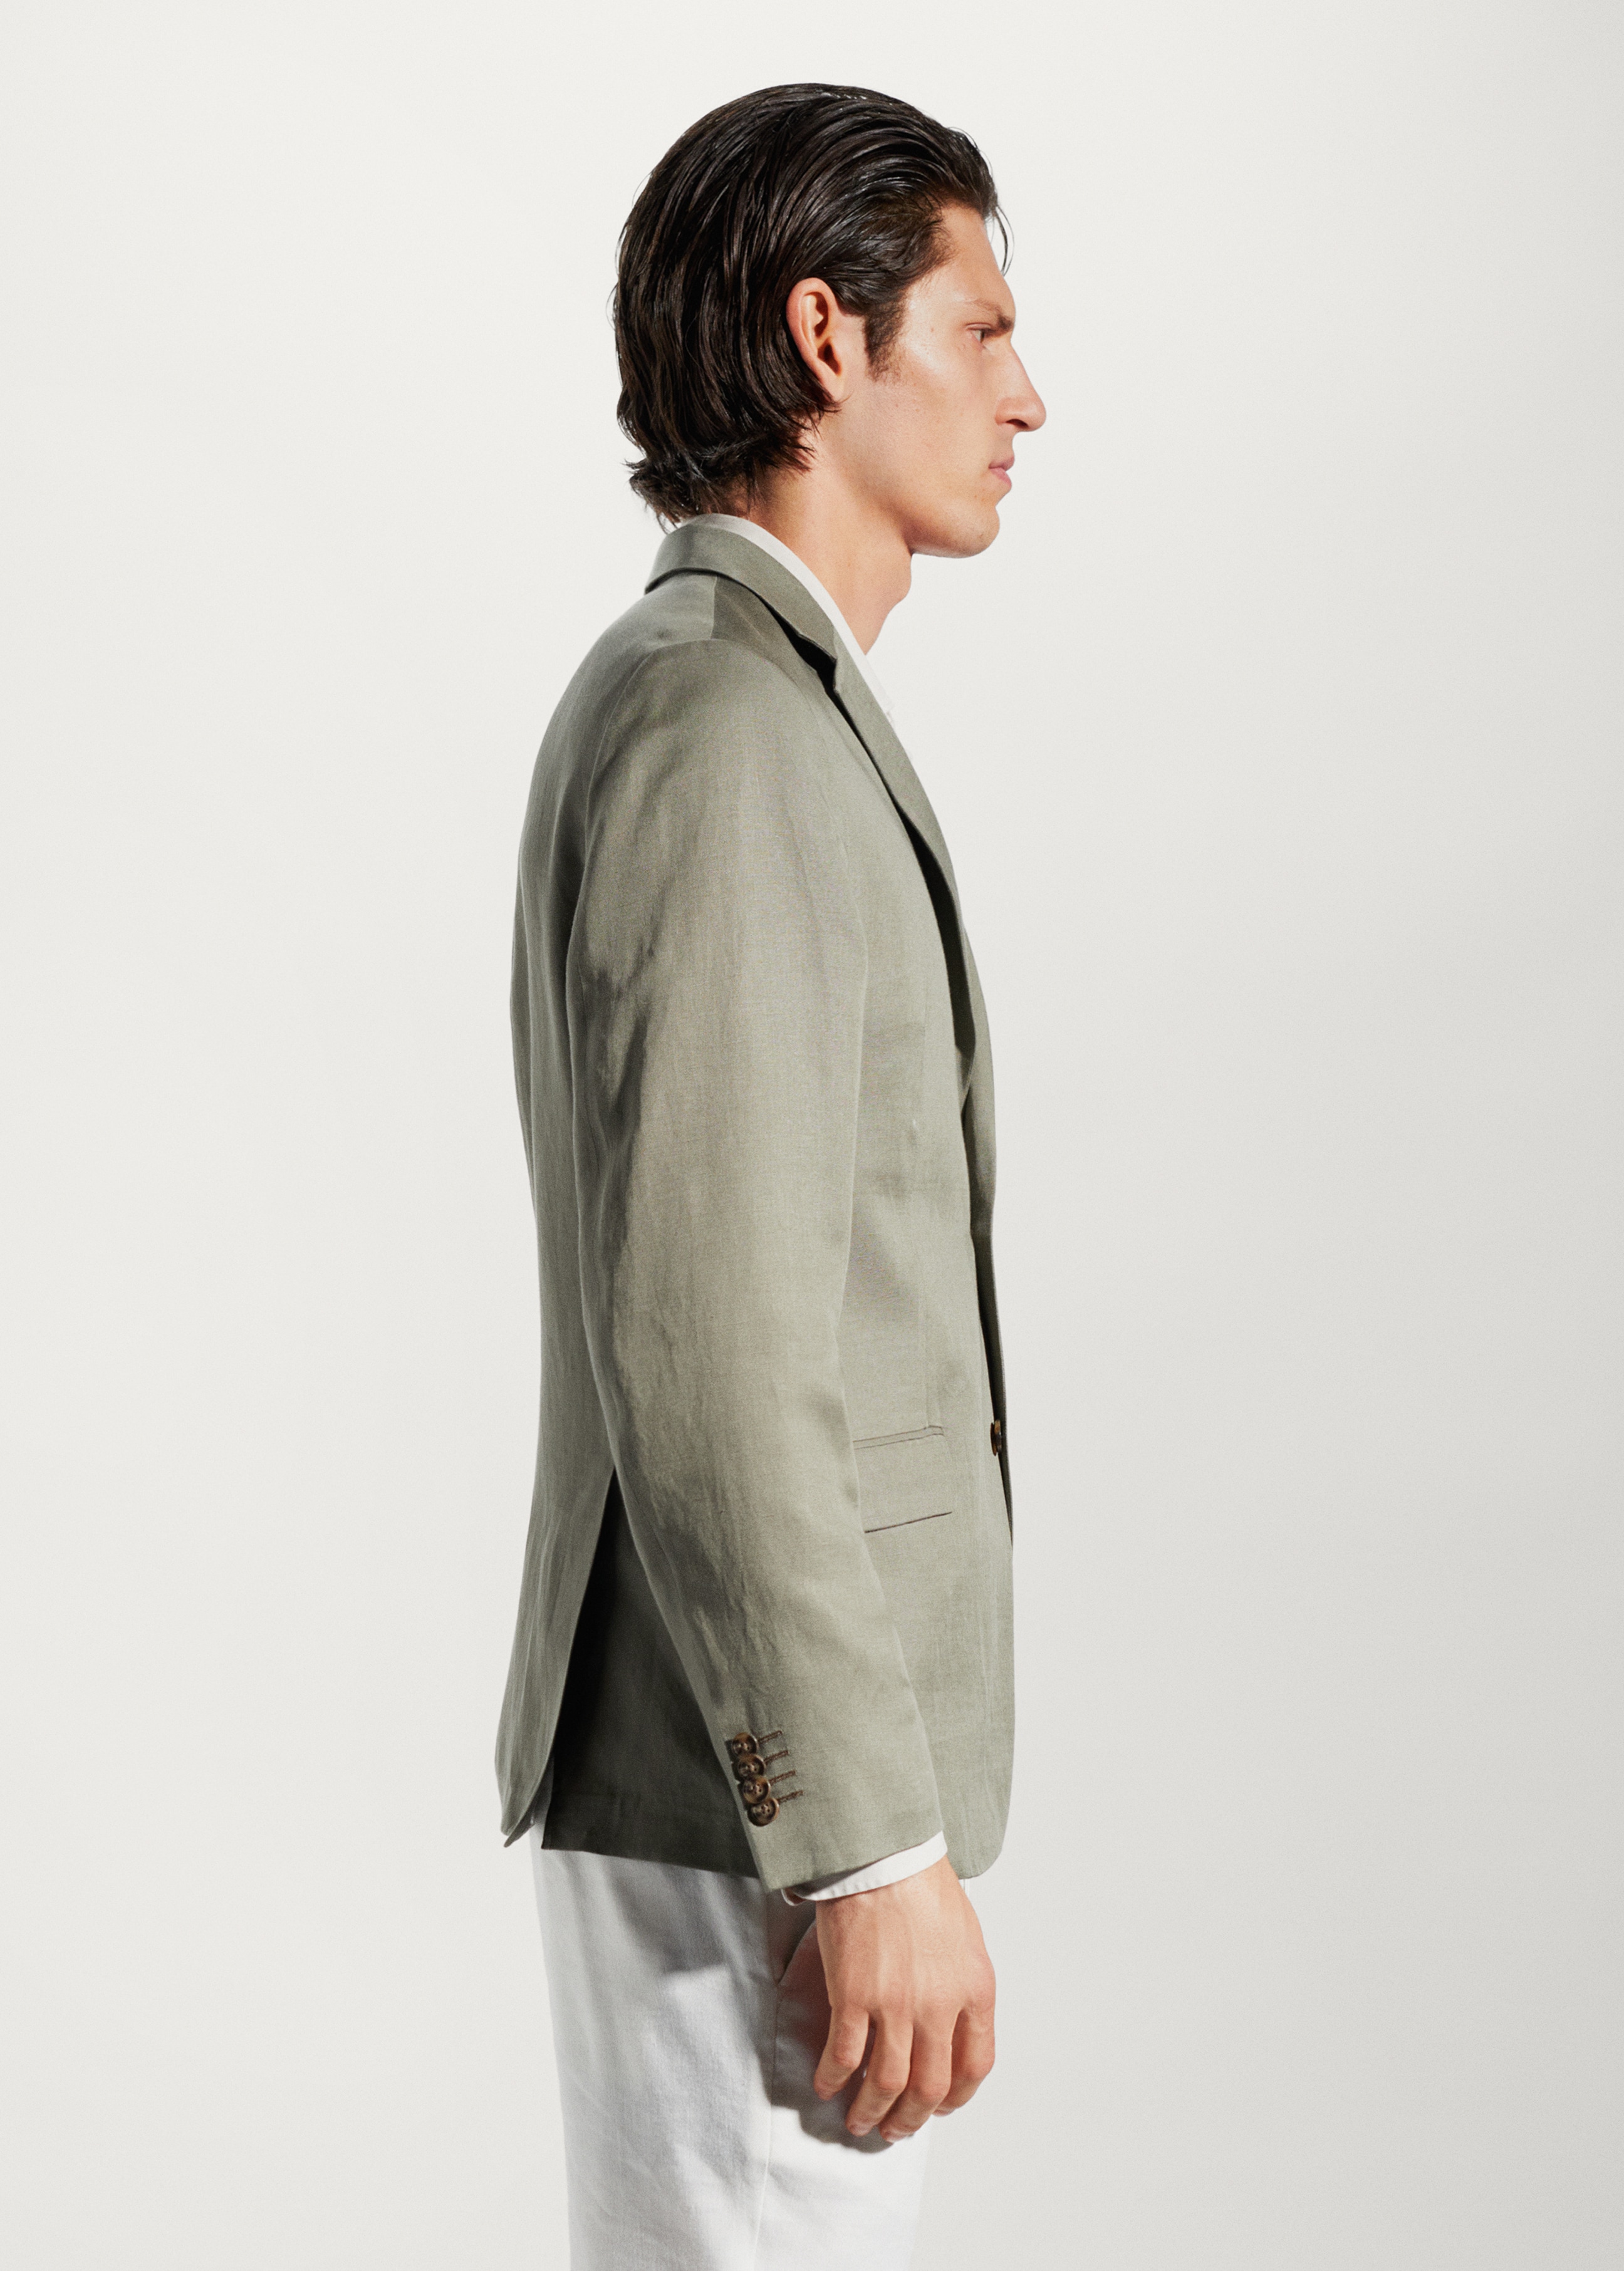 Slim fit linen suit blazer - Details of the article 2